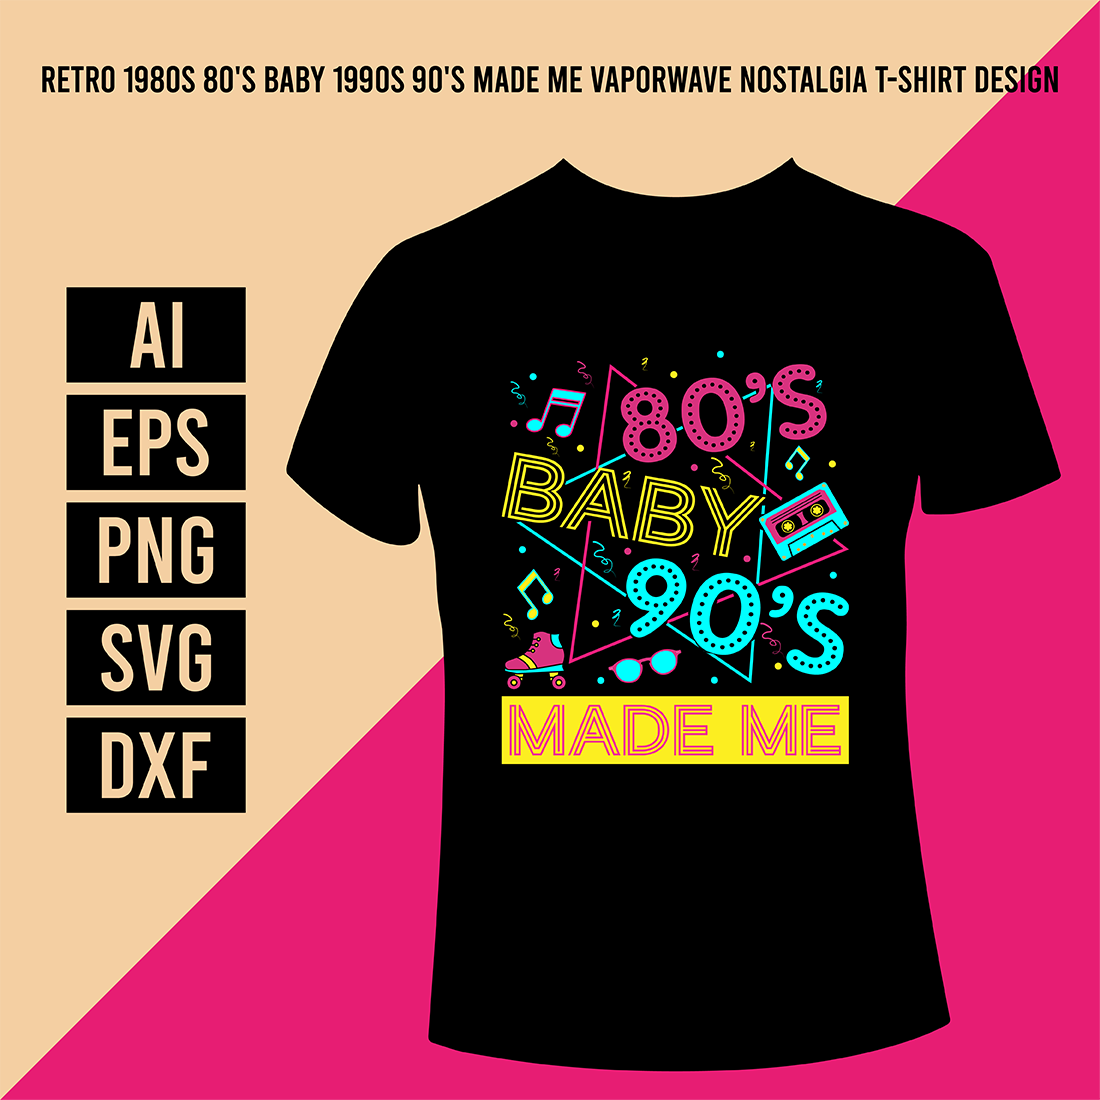 Retro 1980s 80's Baby 1990s 90's Made Me Vaporwave Nostalgia T-Shirt Design cover image.